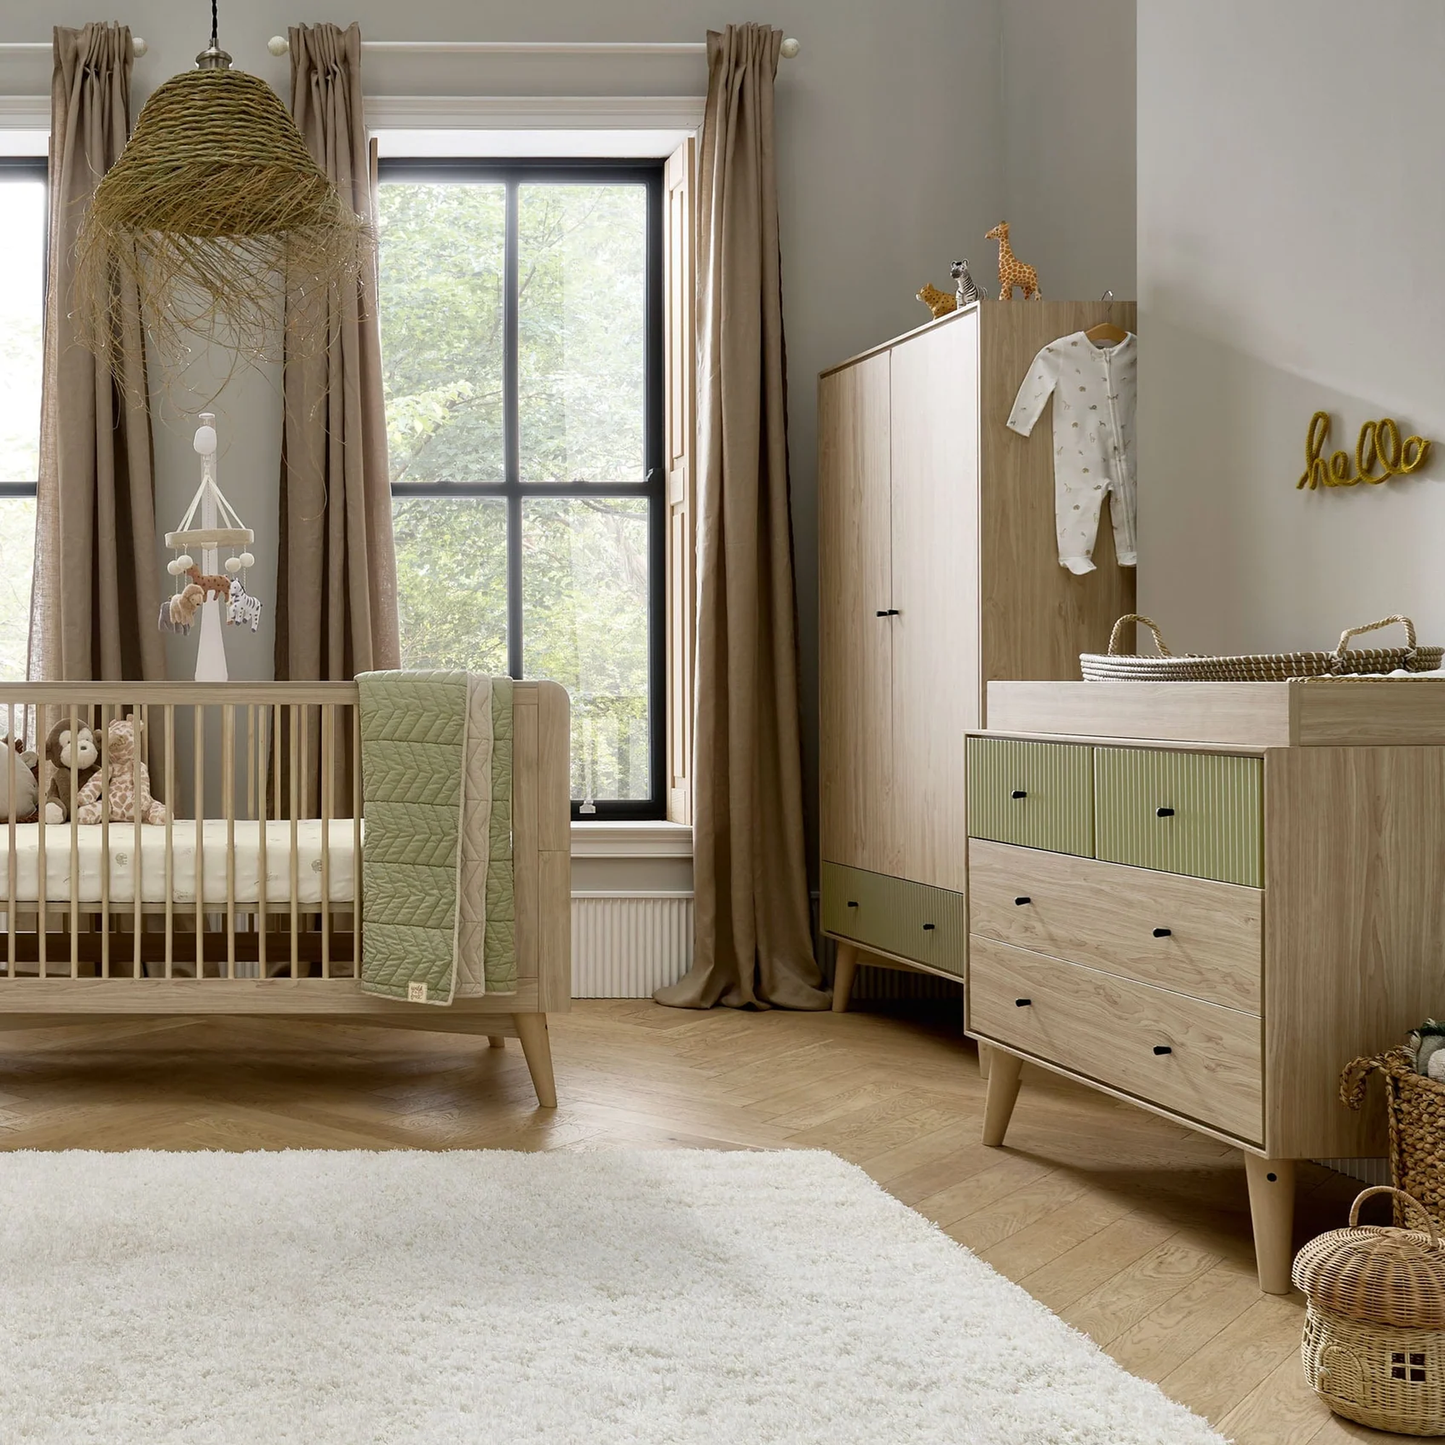 Mamas & Papas Coxley 3-piece Range (Cot bed, Dresser & Wardrobe)